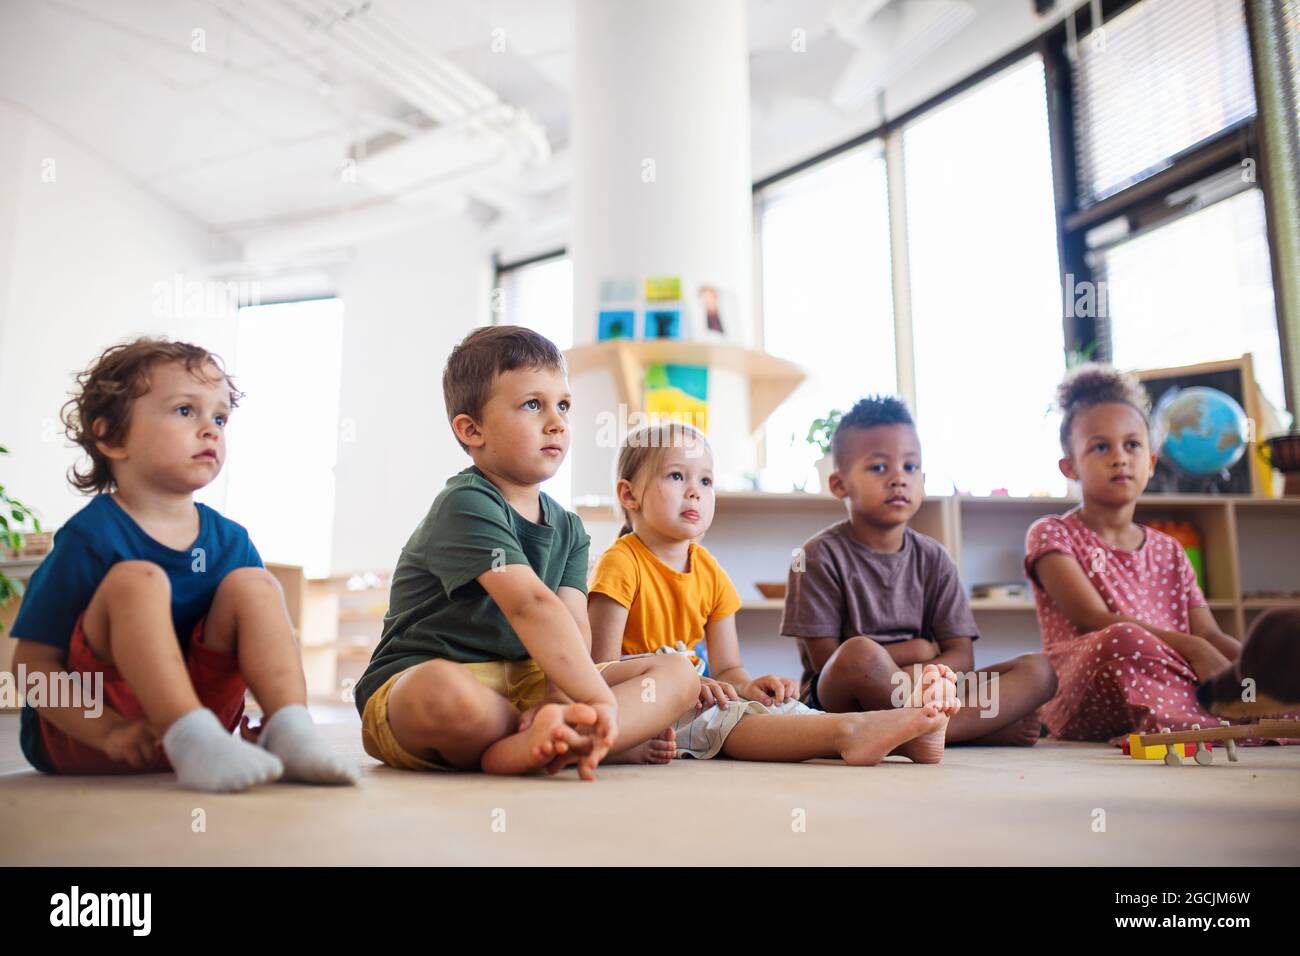 Gruppe von kleinen Kindergartenkindern, die im Klassenzimmer auf dem Boden sitzen. Stockfoto